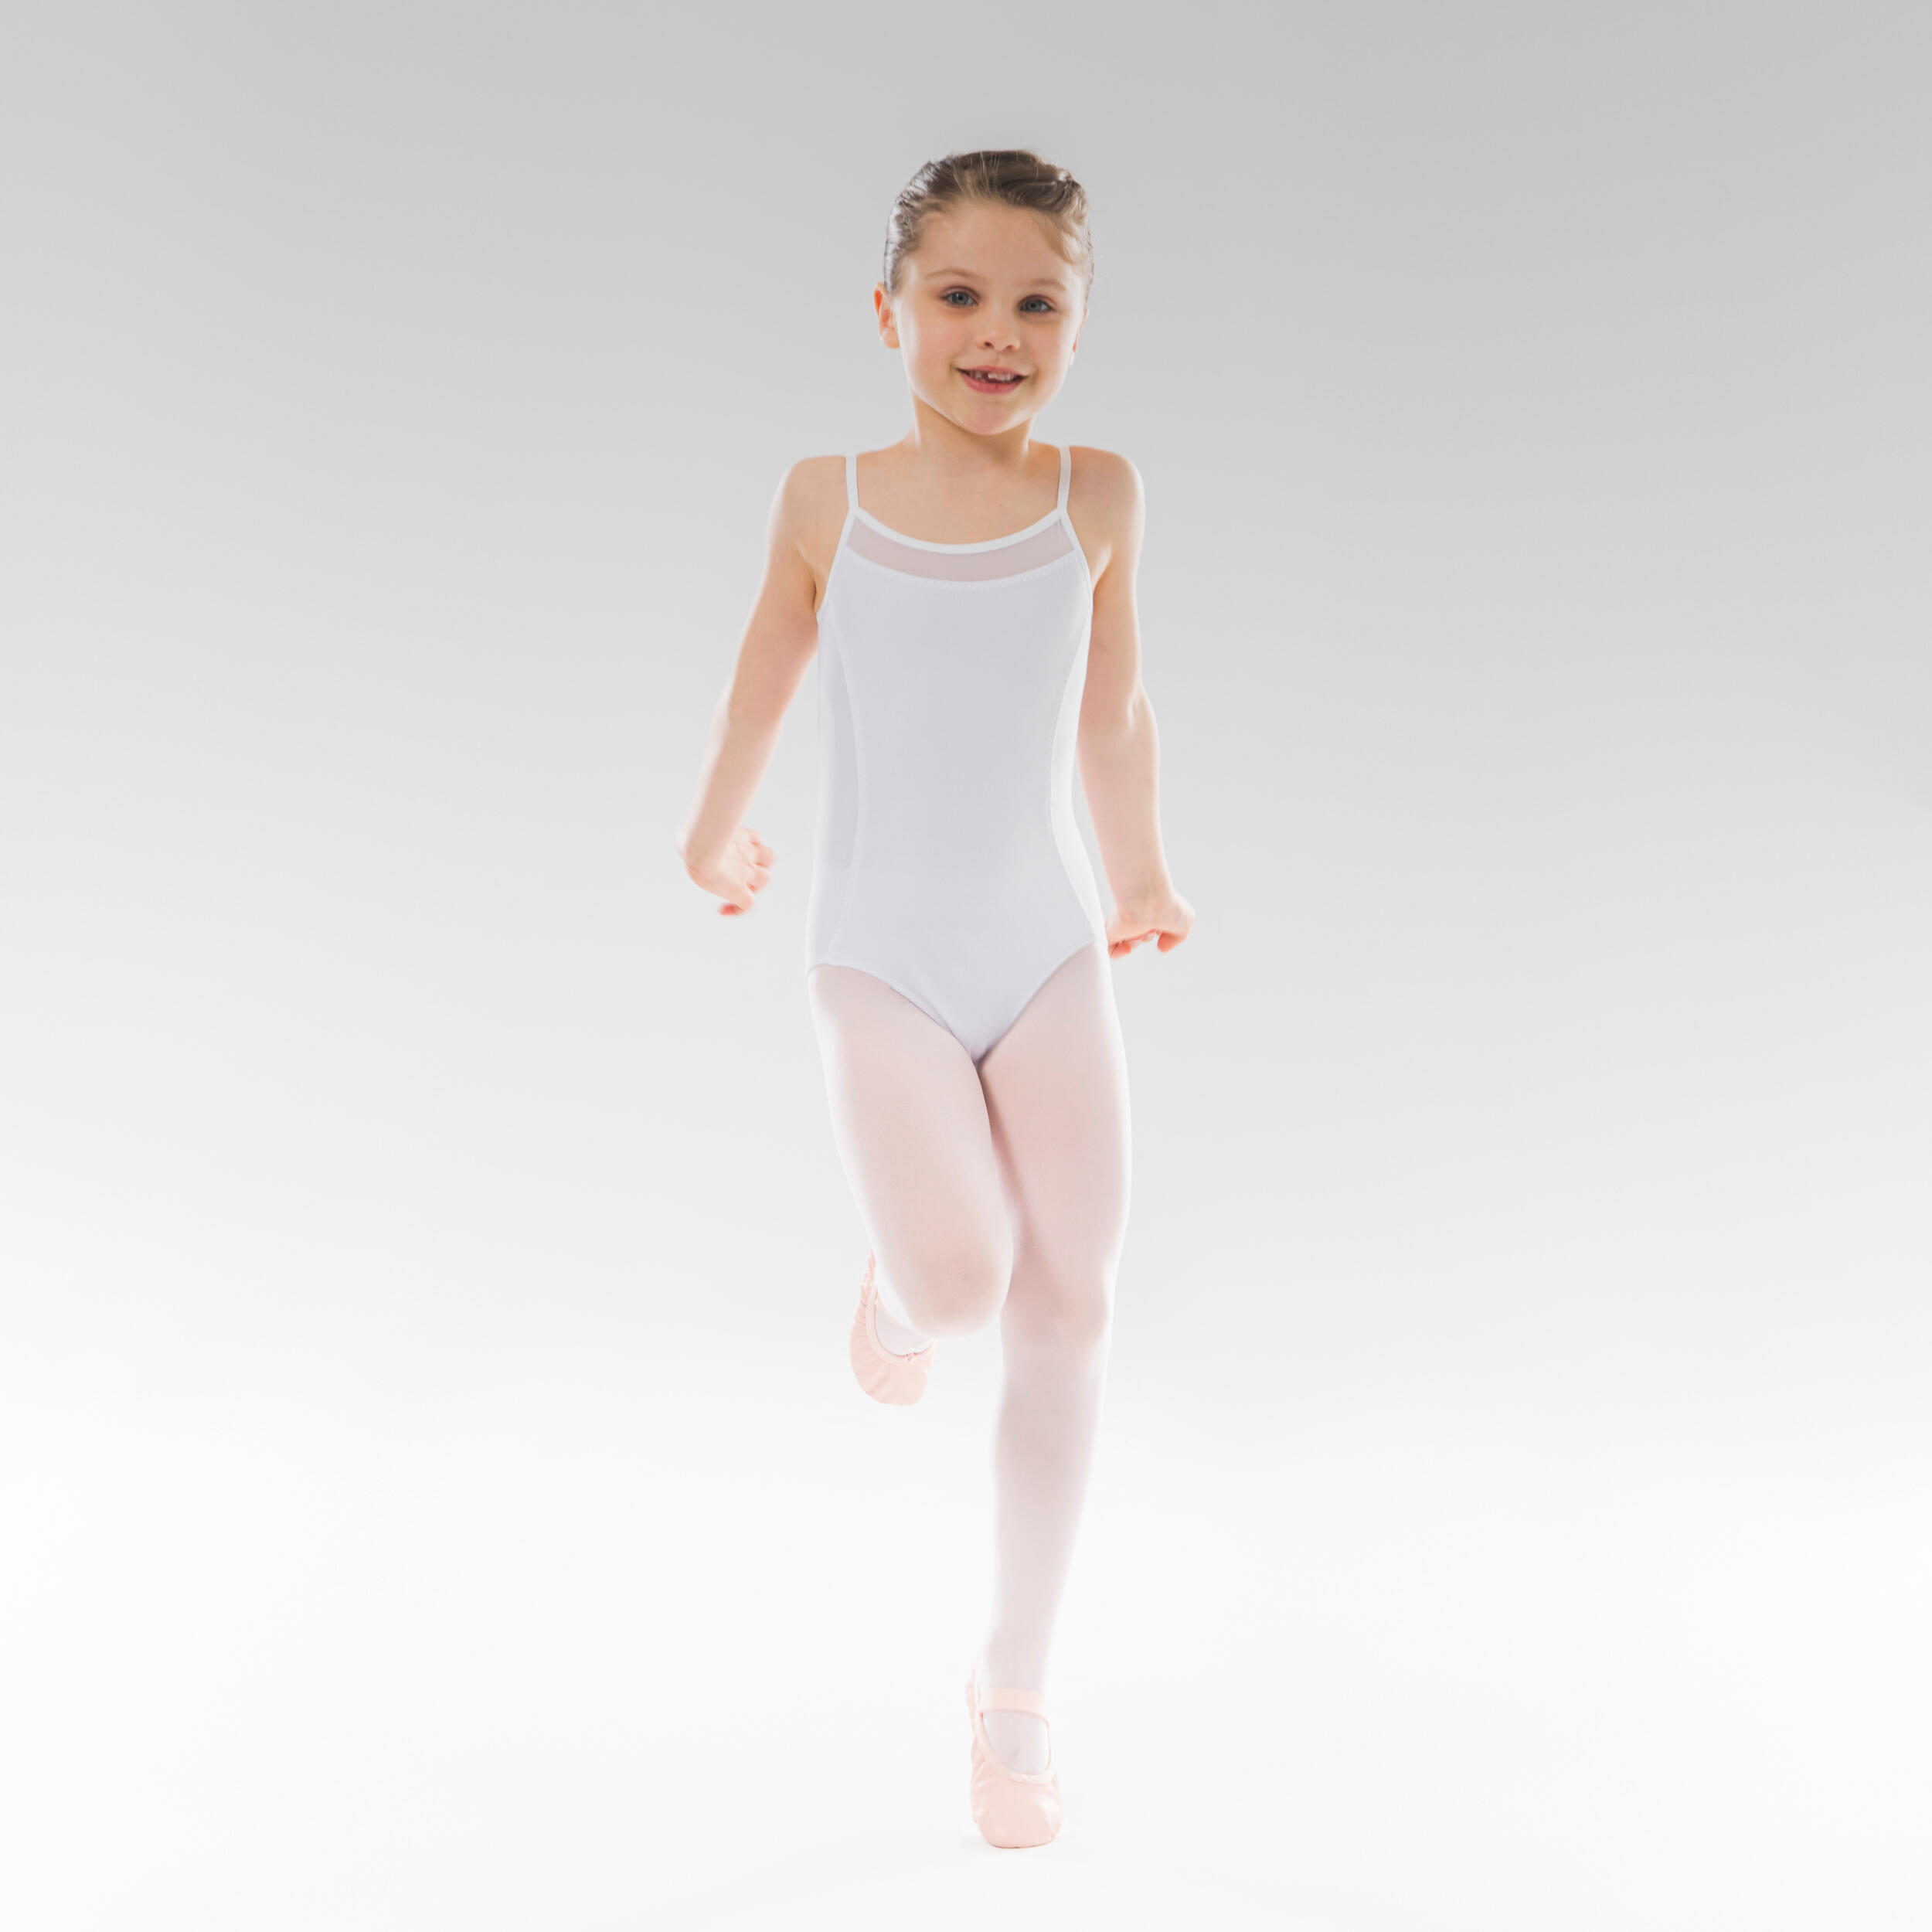 STAREVER Girls' Ballet Camisole Leotard - White